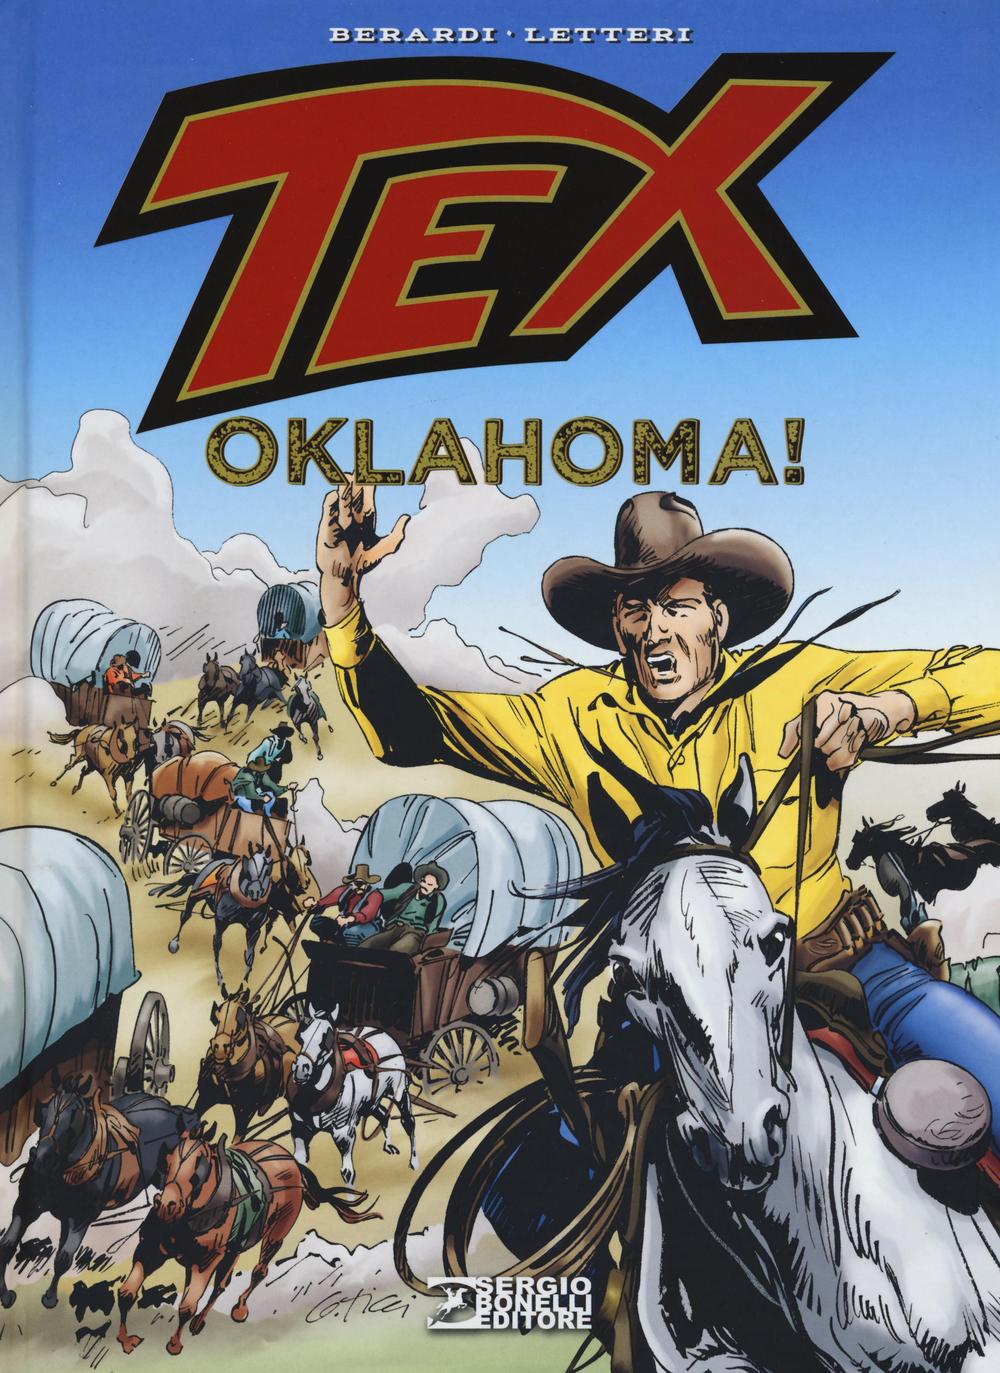 Tex. Oklahoma!